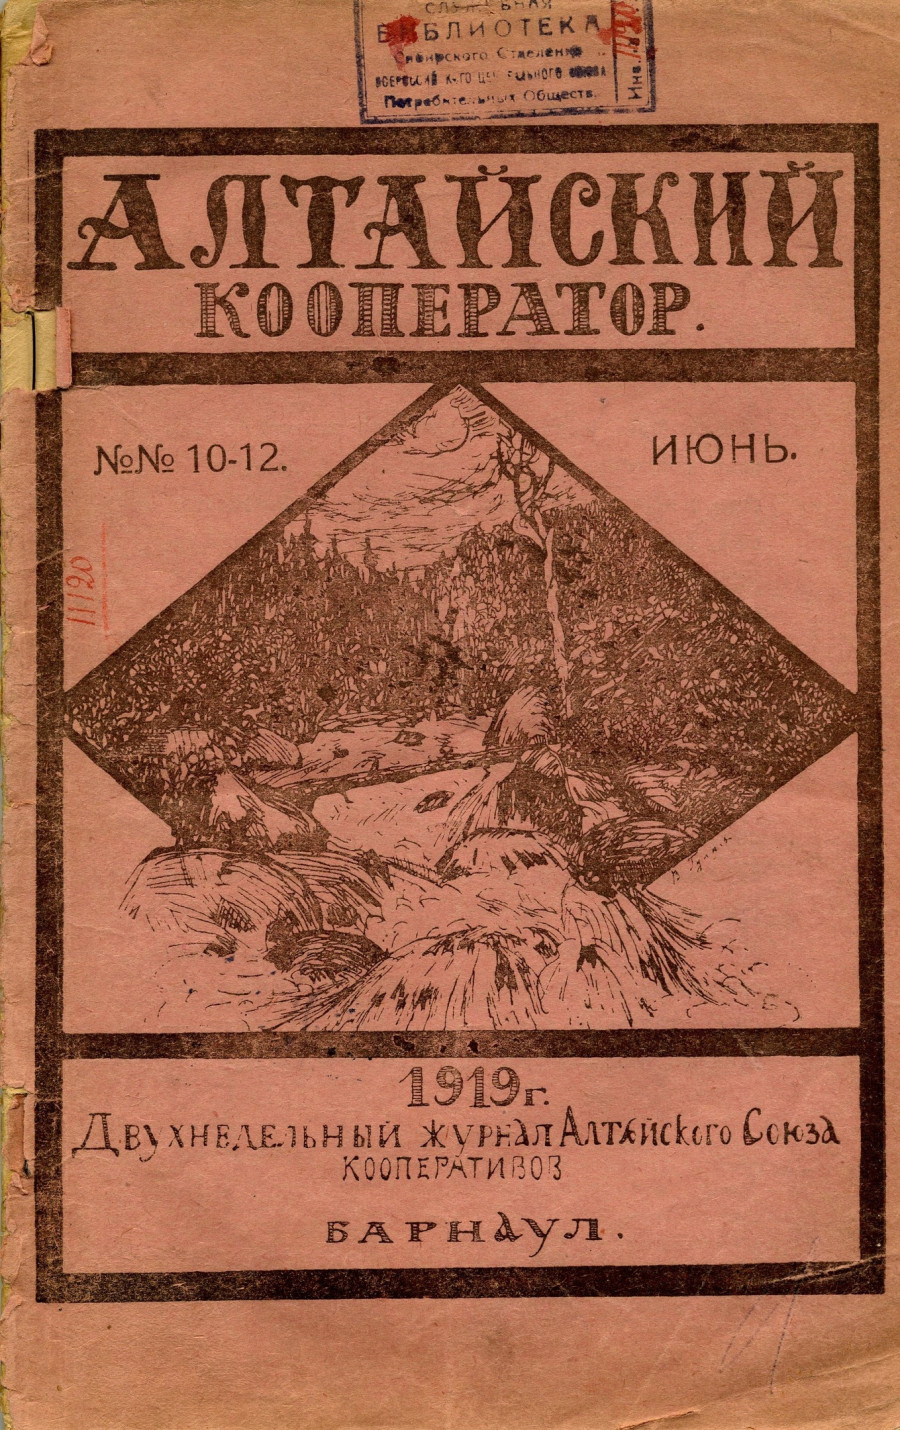 &quot;Алтайский кооператор&quot; - двухнедельный журнал Алтайского союза кооперативов, издание 1919 года.